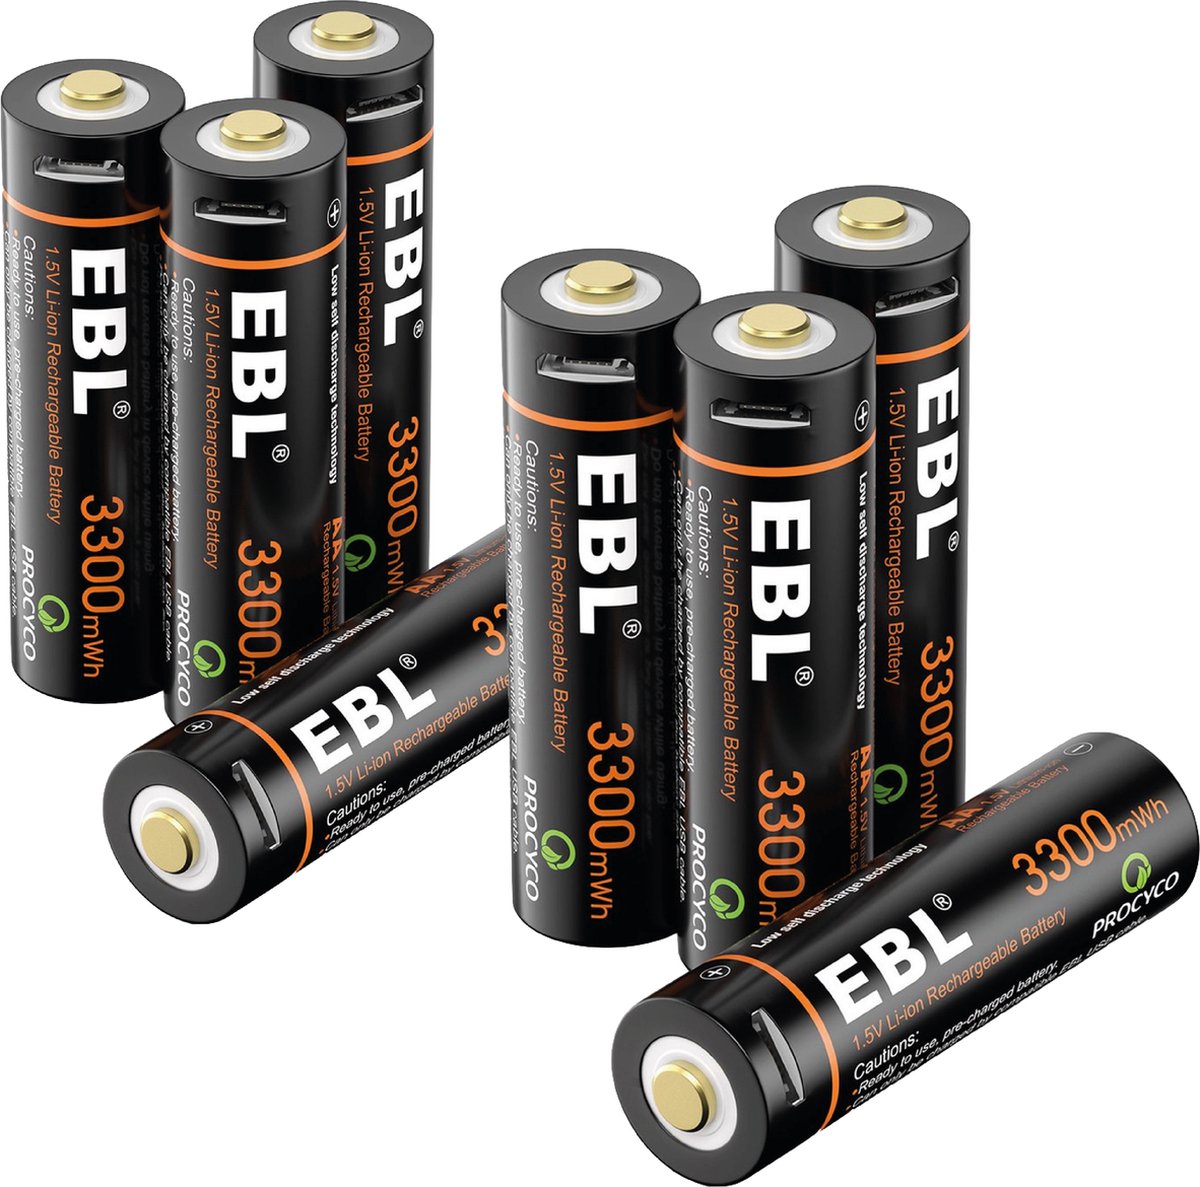 Chargeur de batterie EBL pour piles AA, AAA et 9 Volts avec 4 Piles AA  rechargeables